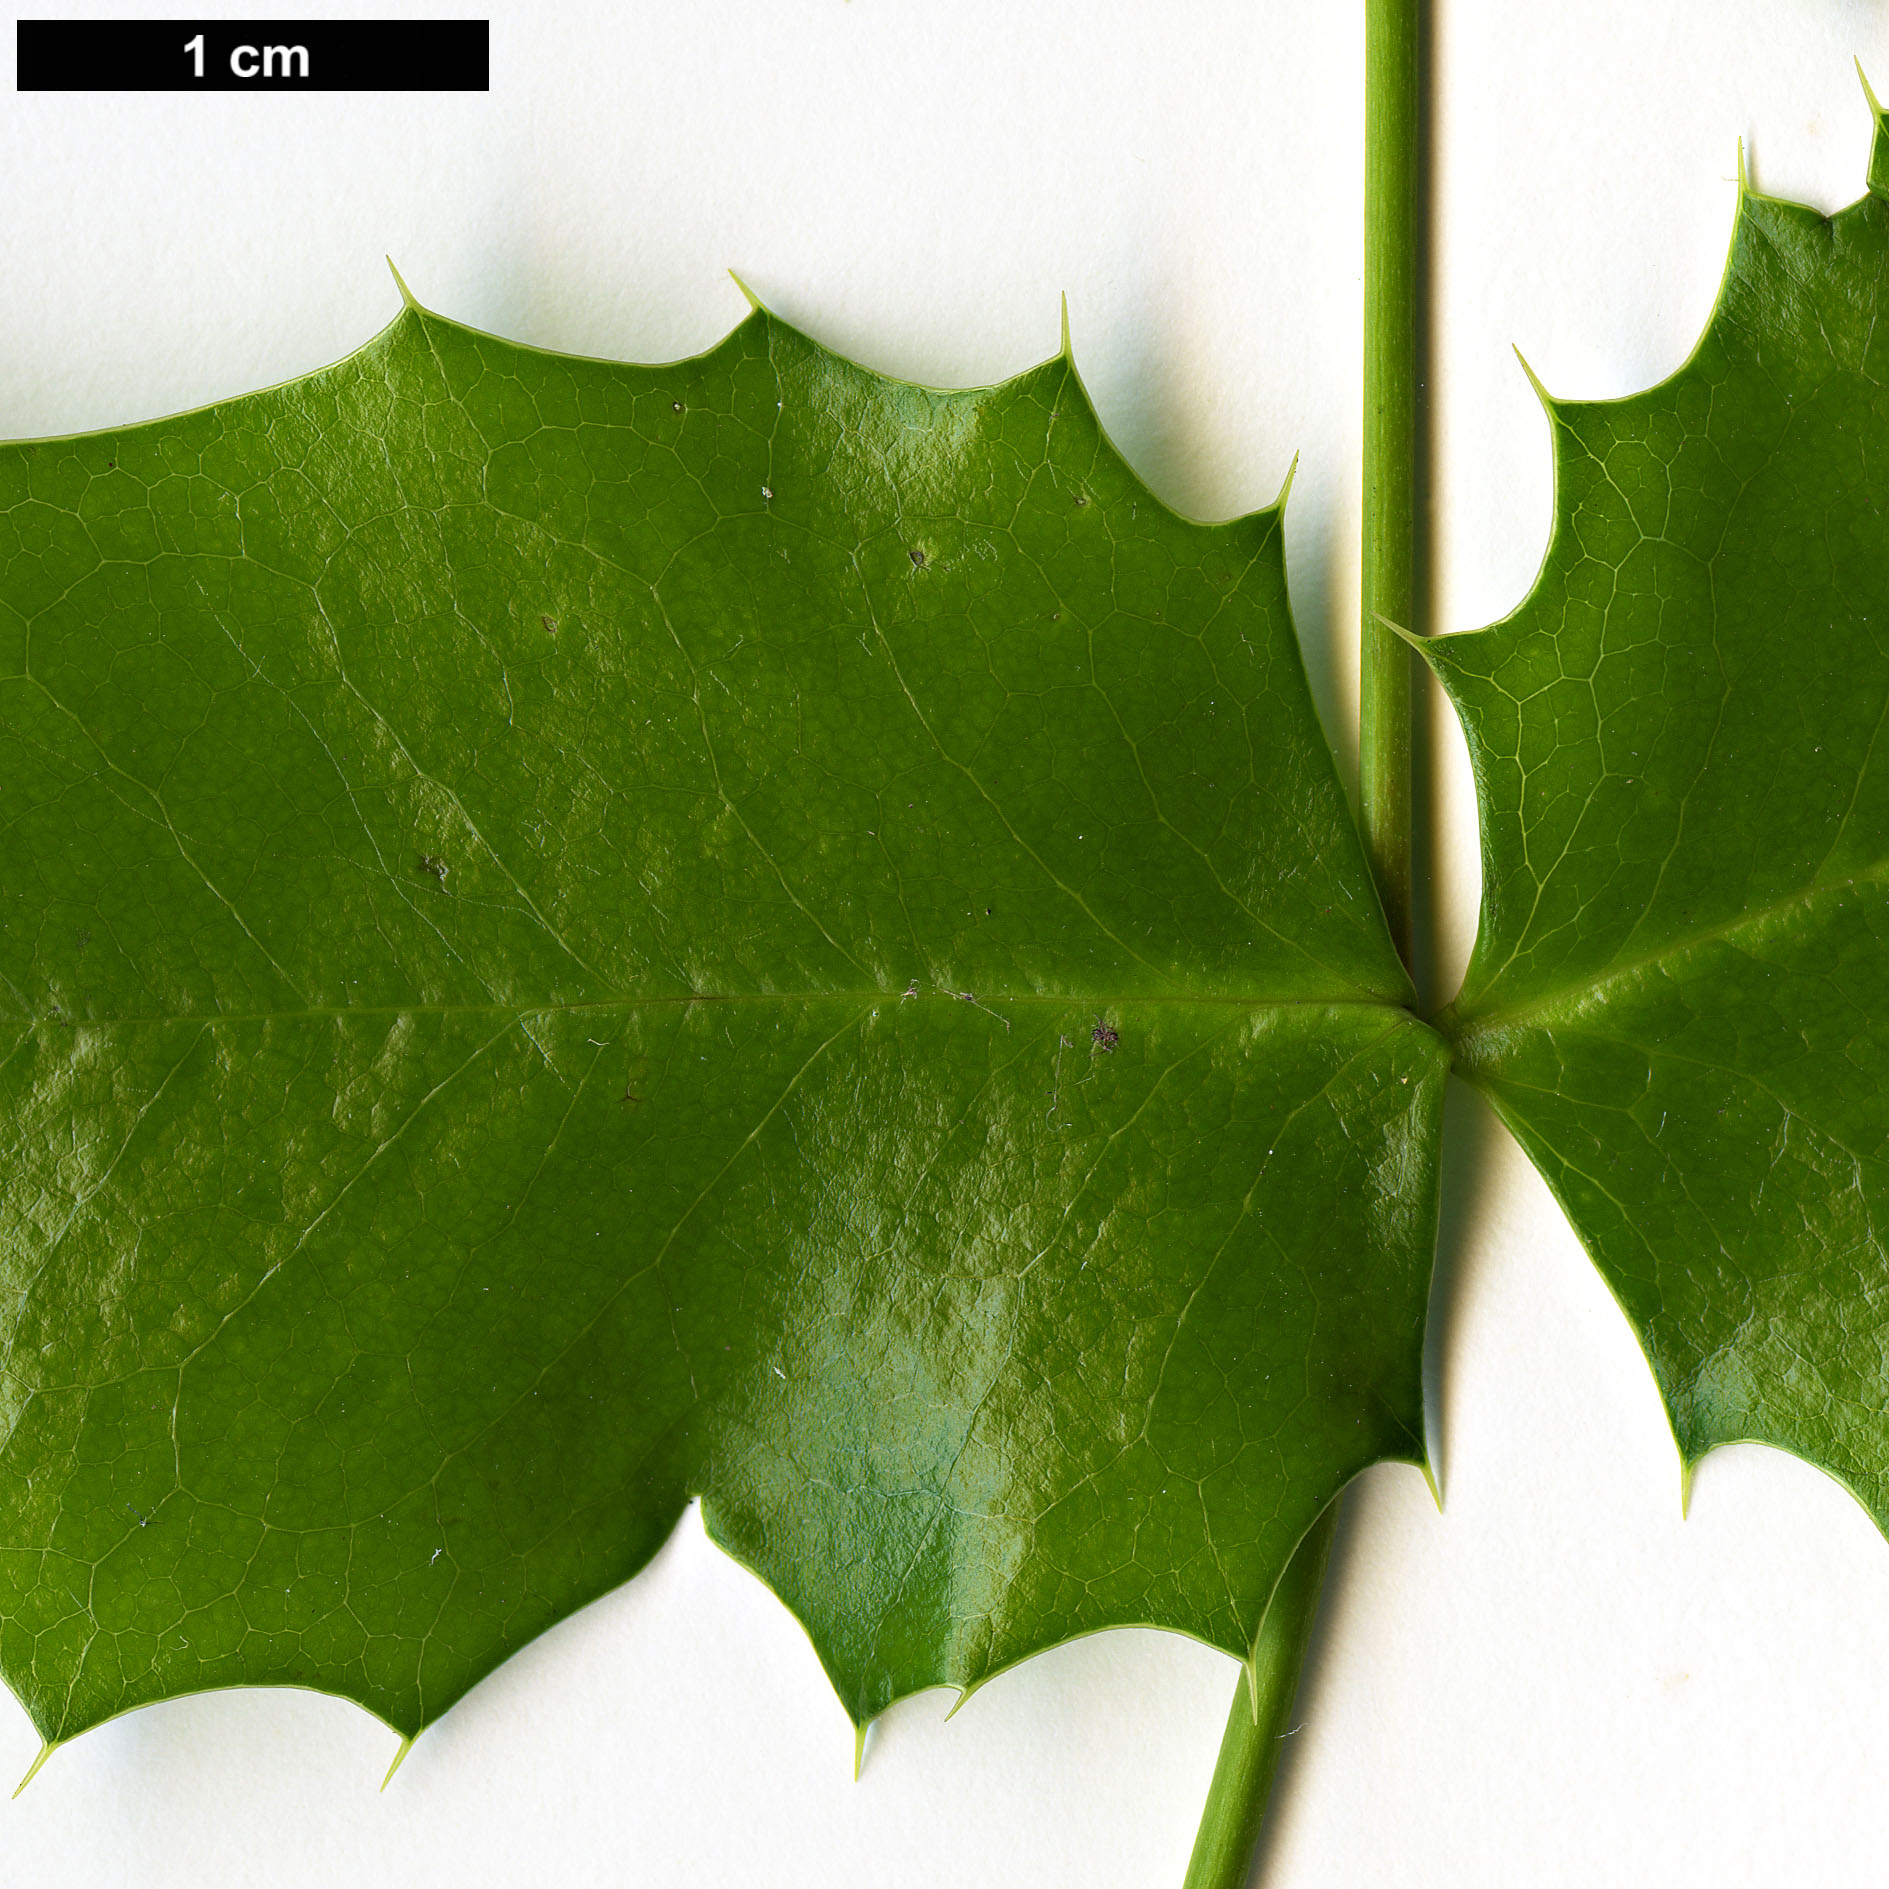 High resolution image: Family: Berberidaceae - Genus: Mahonia - Taxon: aquifolium